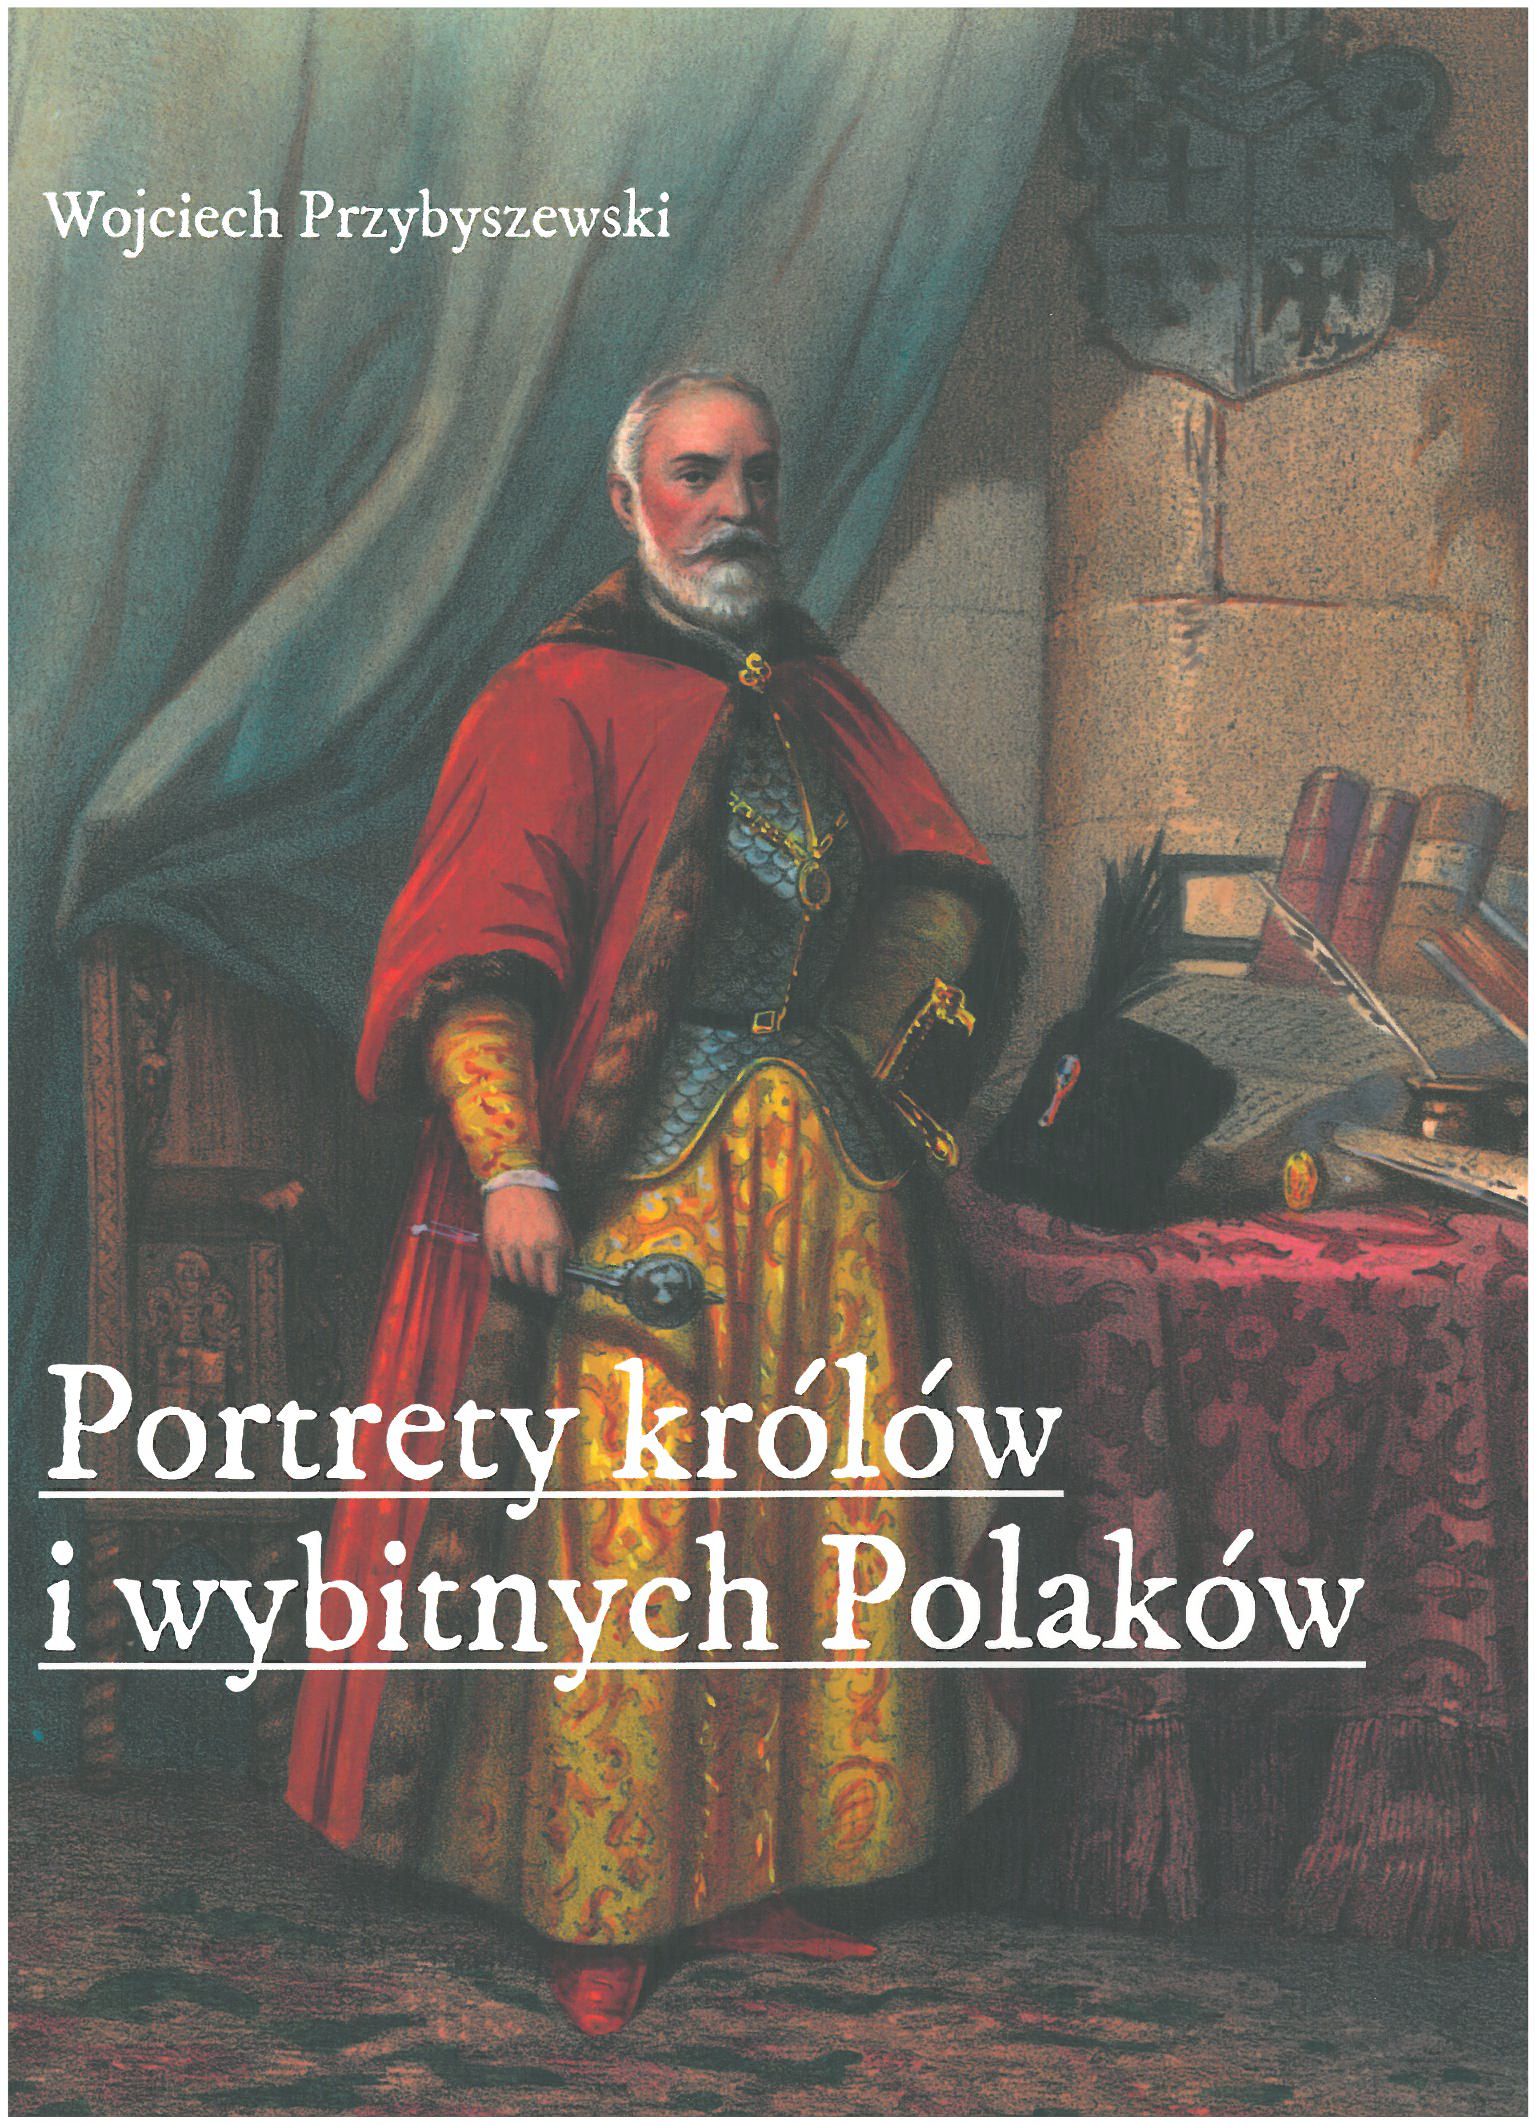 Wojciech Przybyszewski, Portrety królów i wybitnych Polaków. Serie wydawnicze z lat 1820-1864